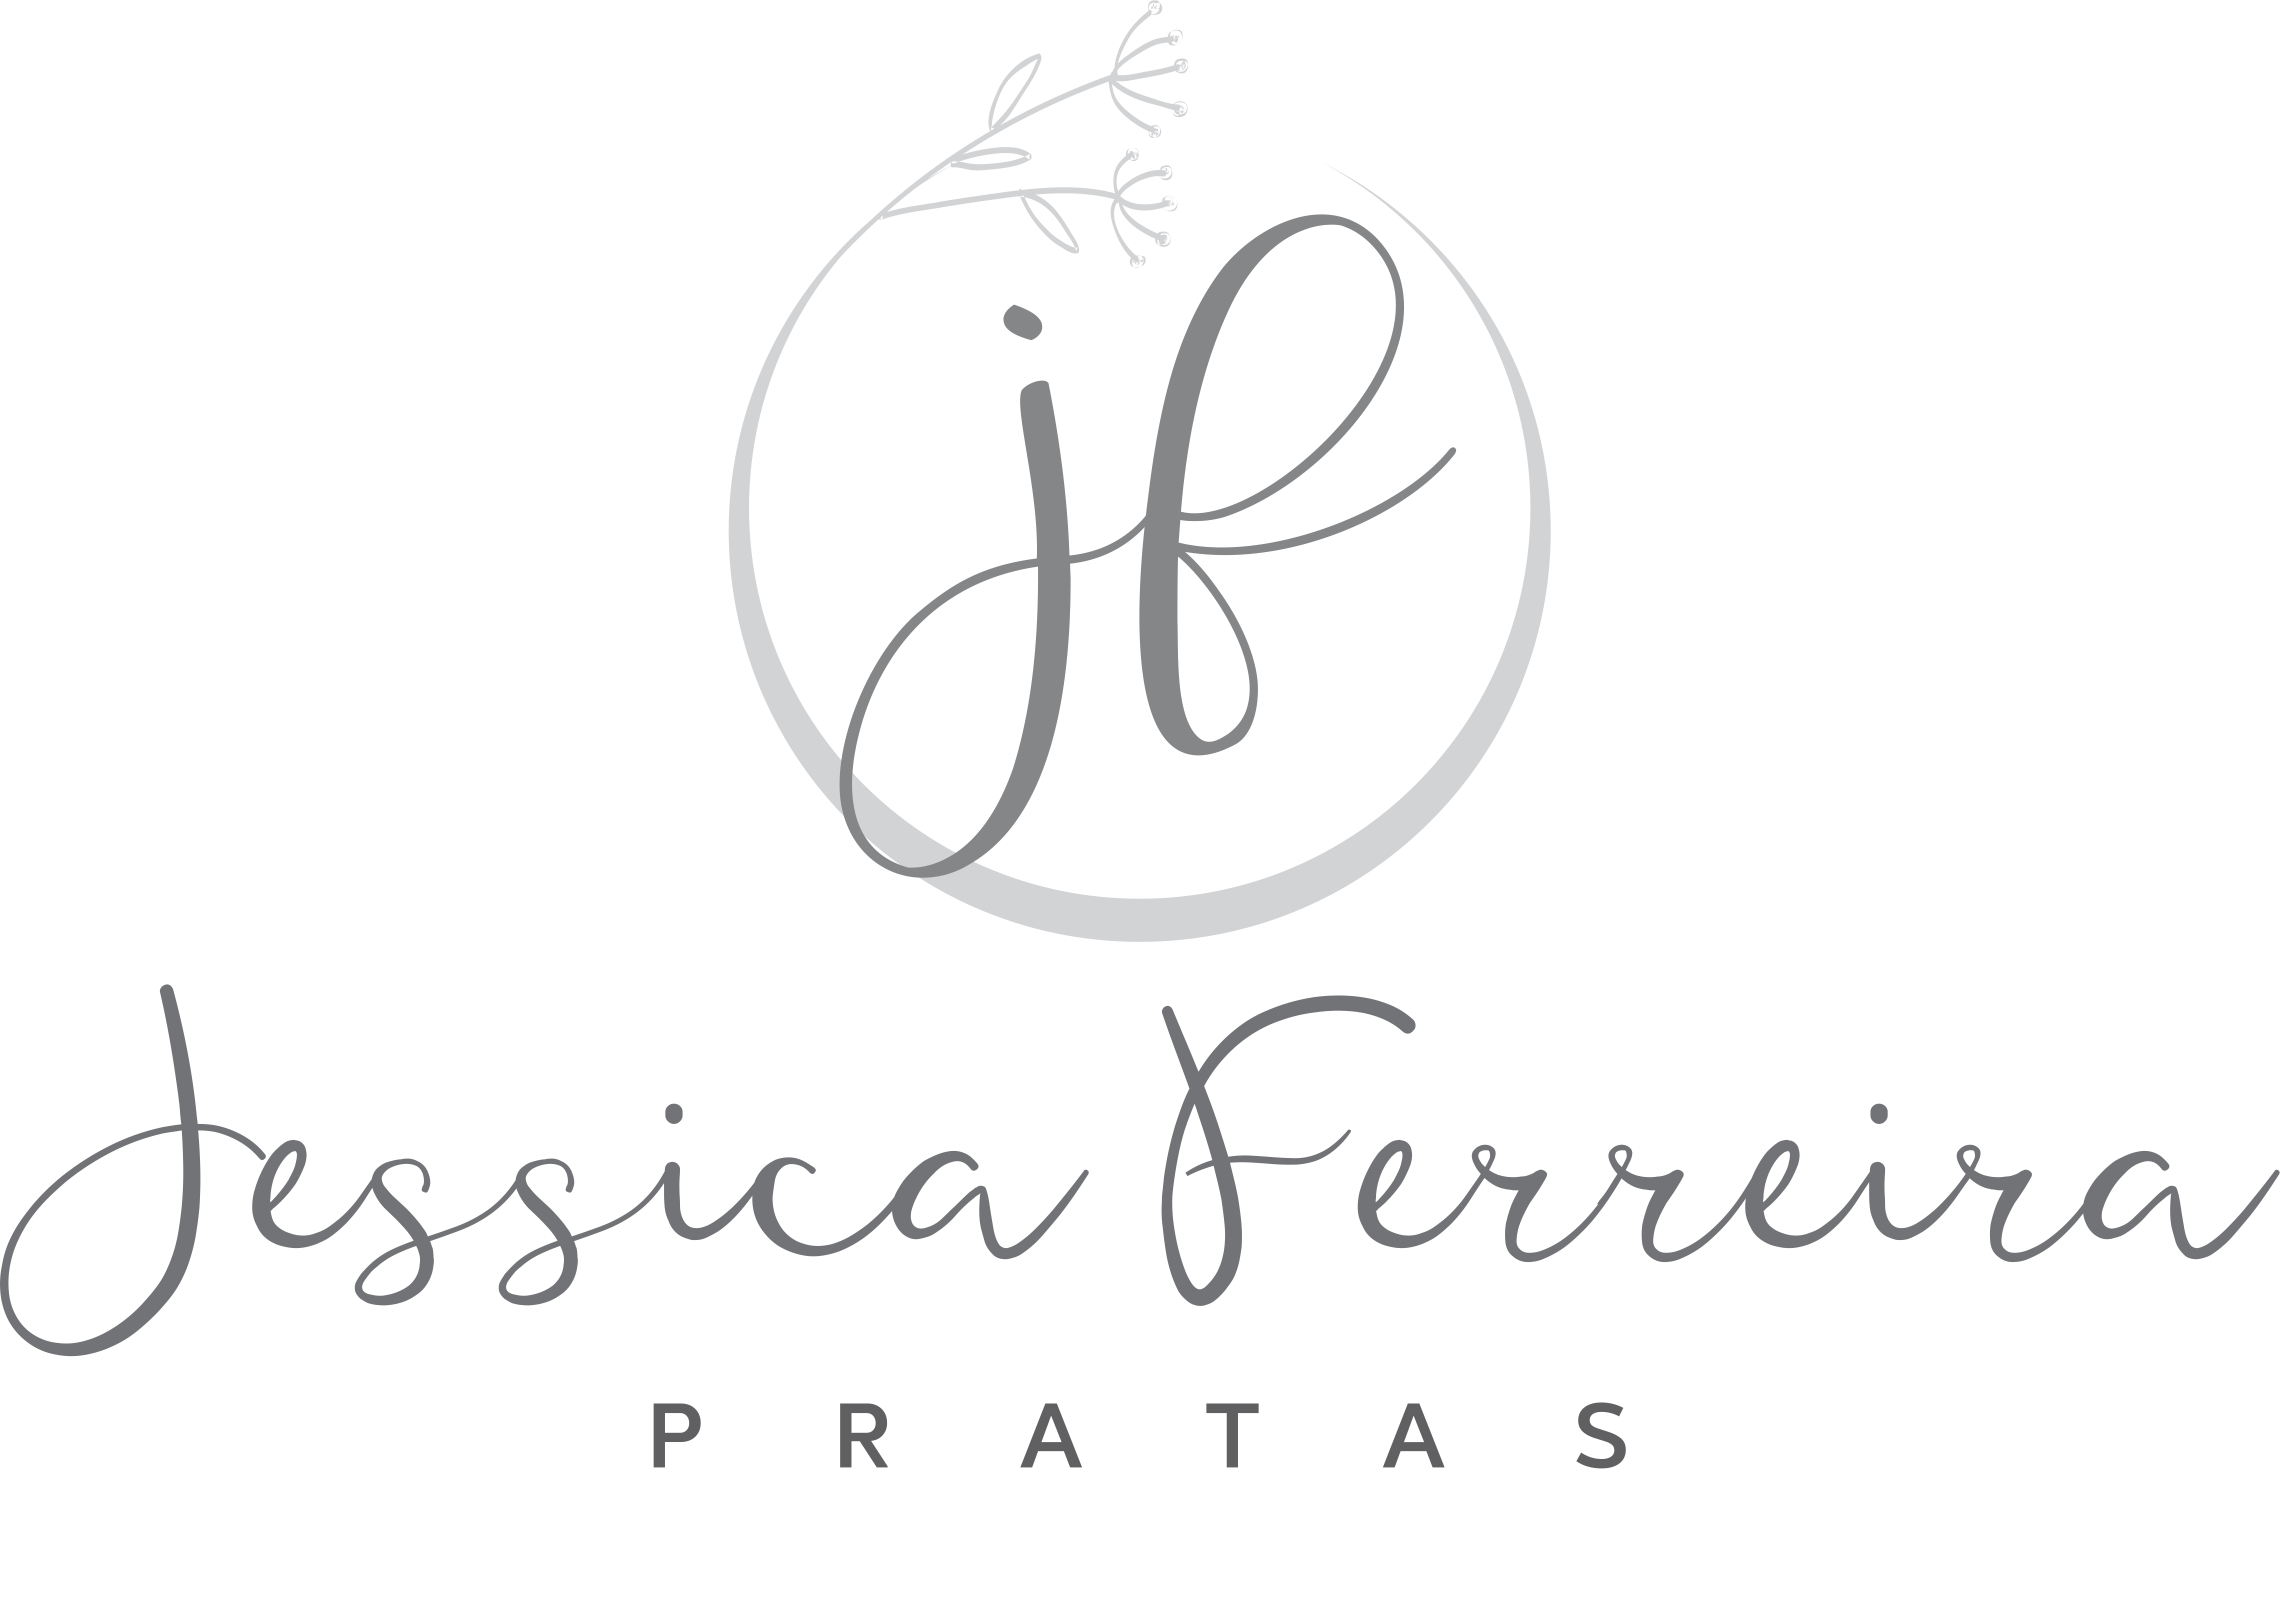 Jessica Ferreira Pratas